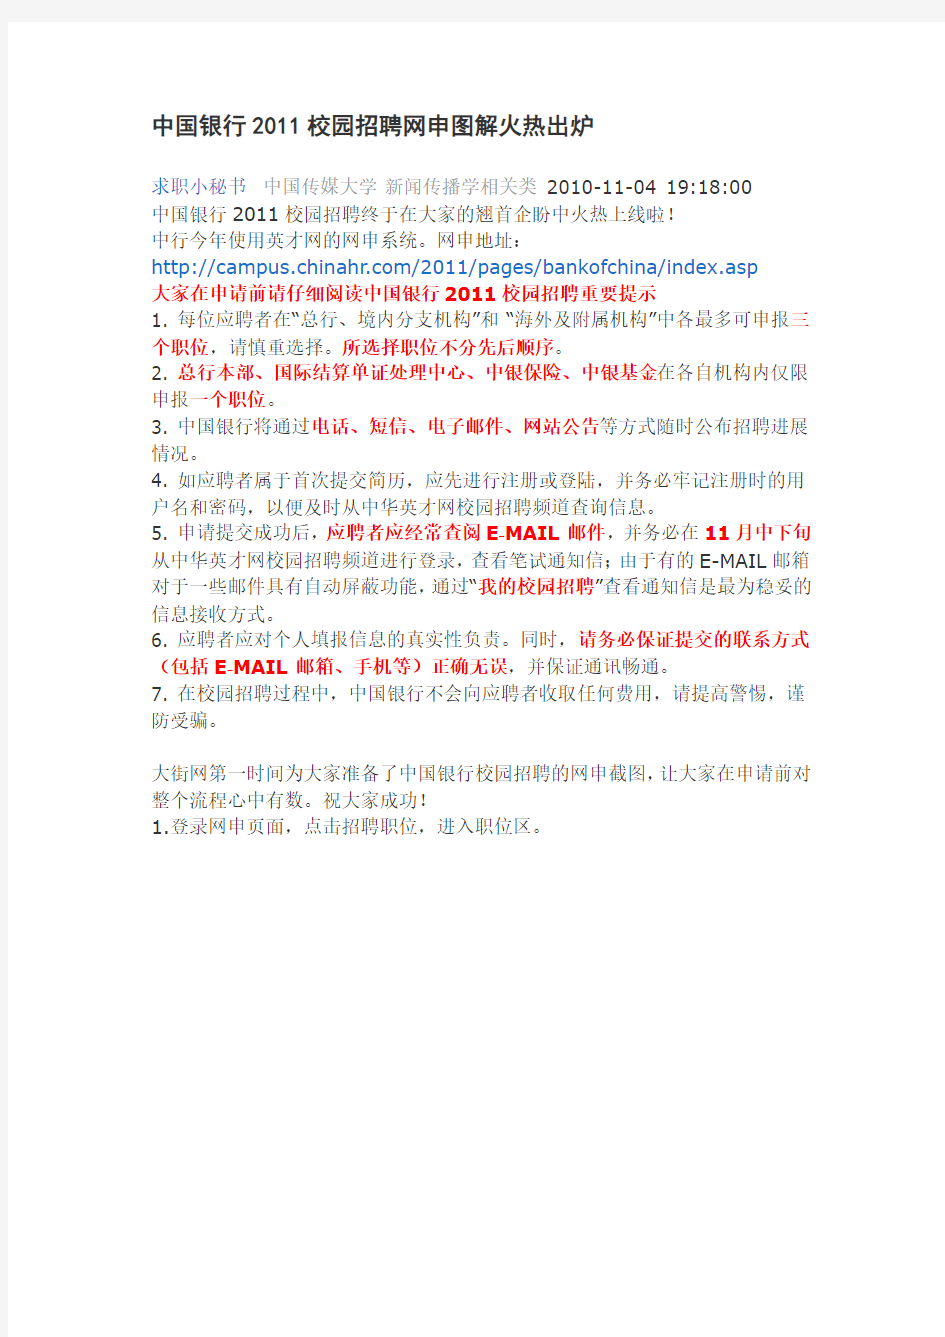 中国银行2011校园招聘网申图解火热出炉